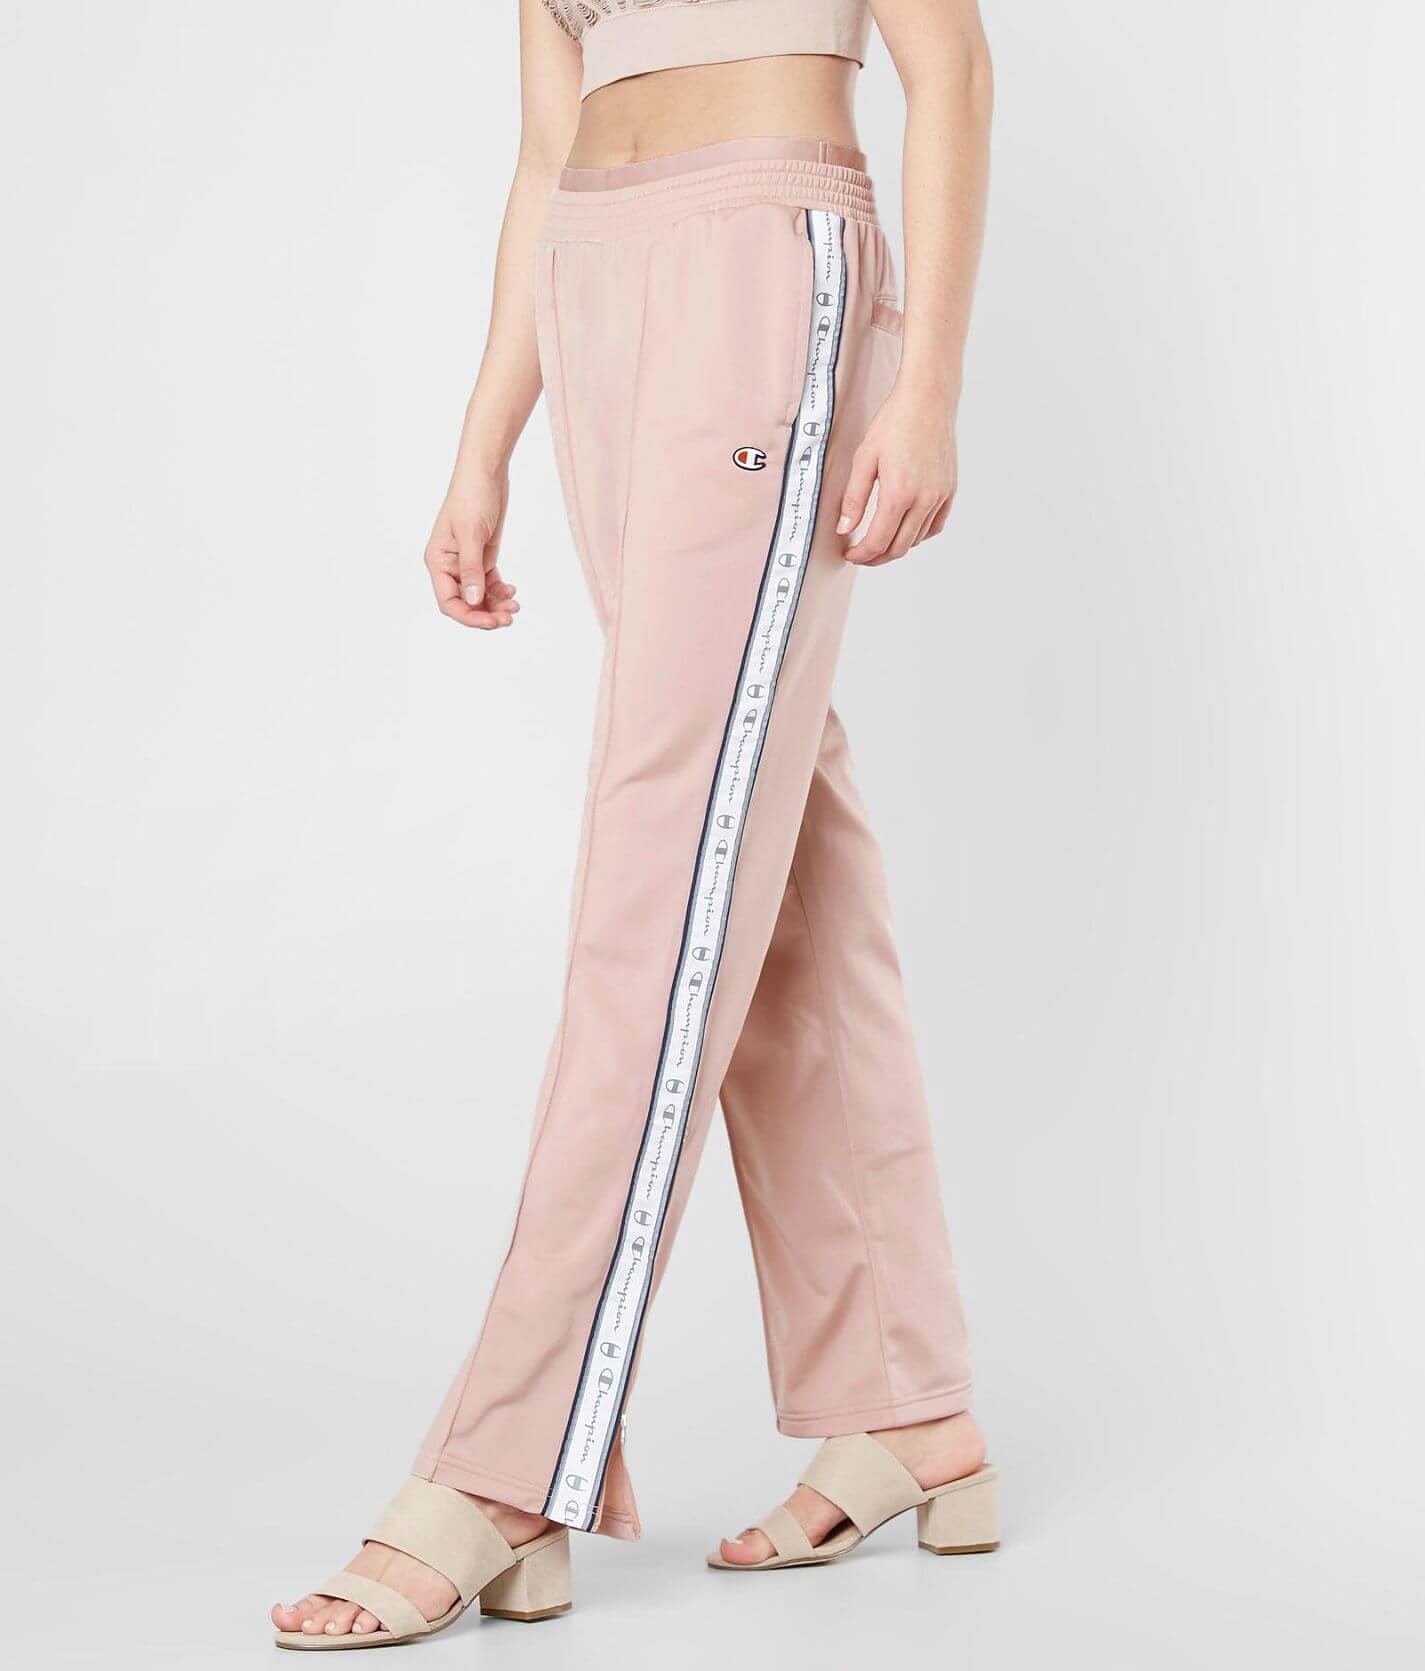 Waden Voorstellen smog Champion® Track Pant - Women's Pants in Dream Pink | Buckle